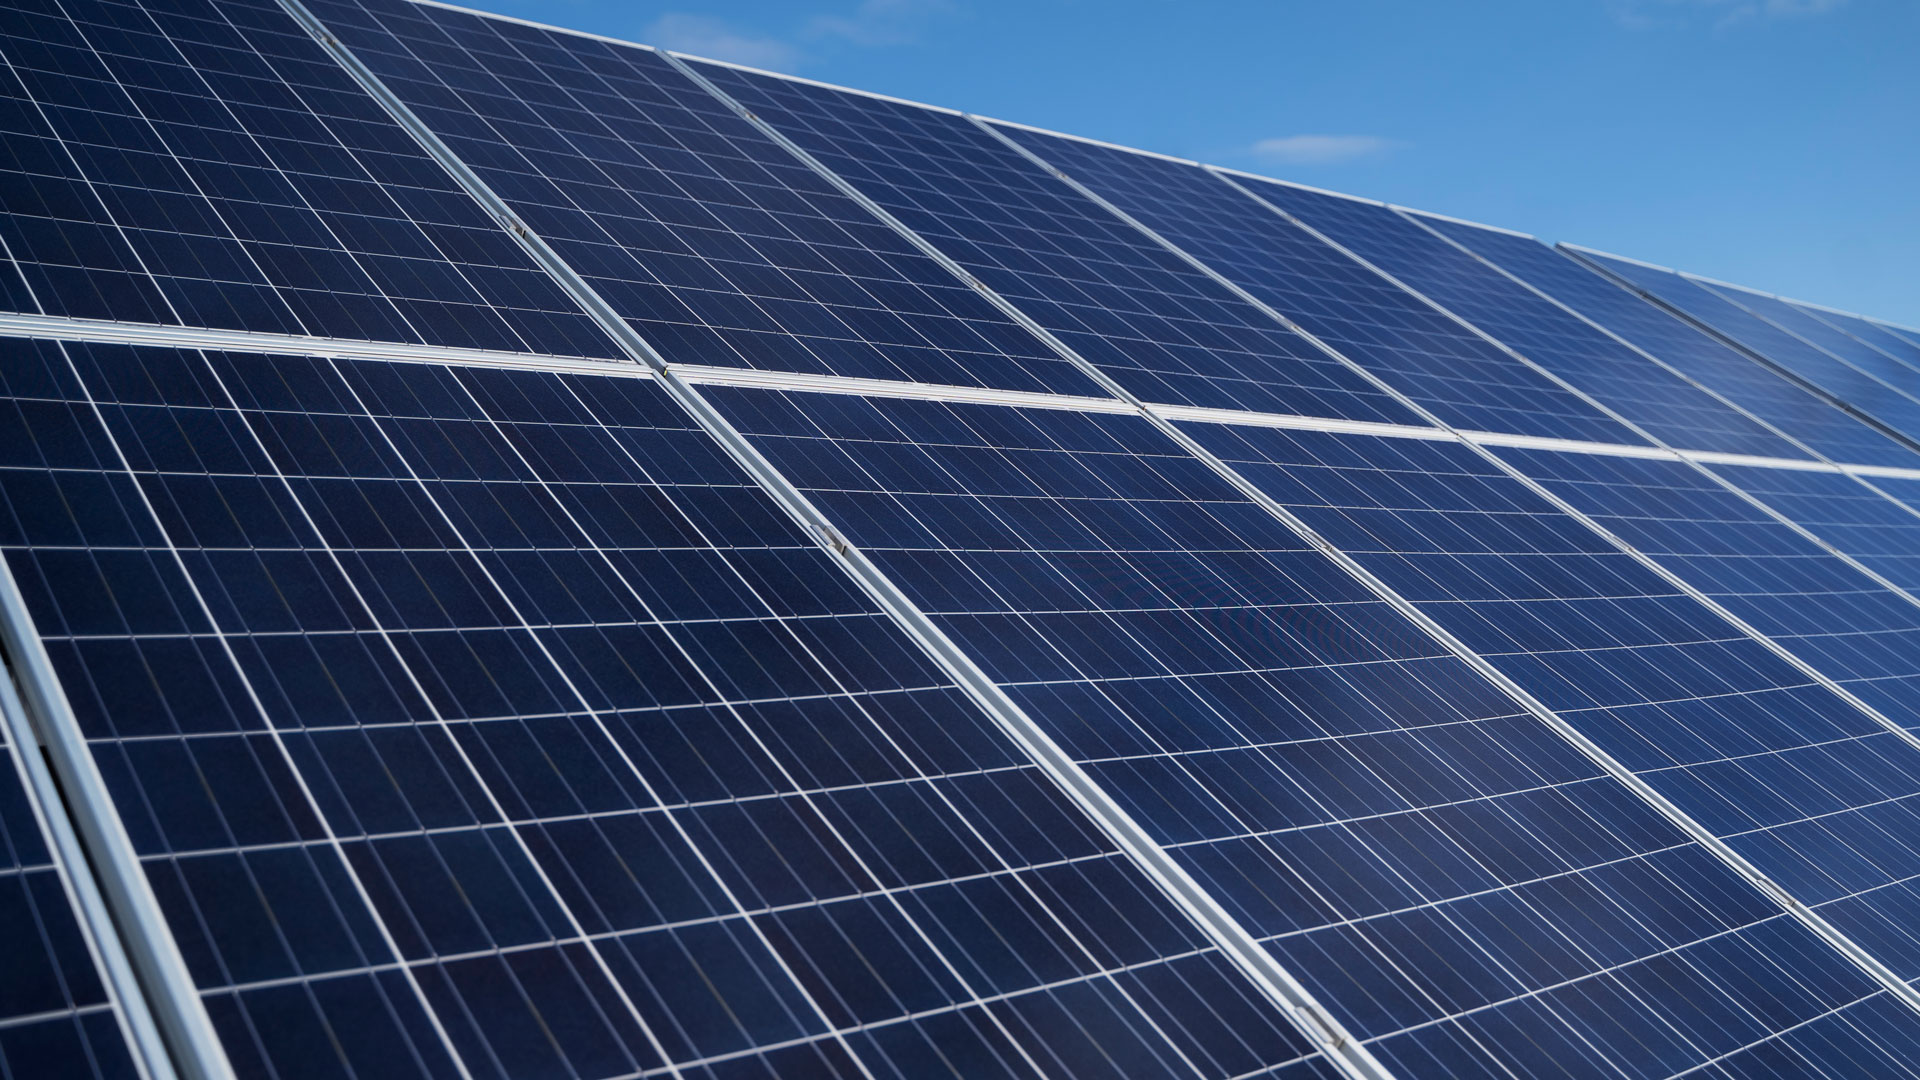 Sabia que pode vender o excedente de energia gerado pelos seus painéis fotovoltaicos?